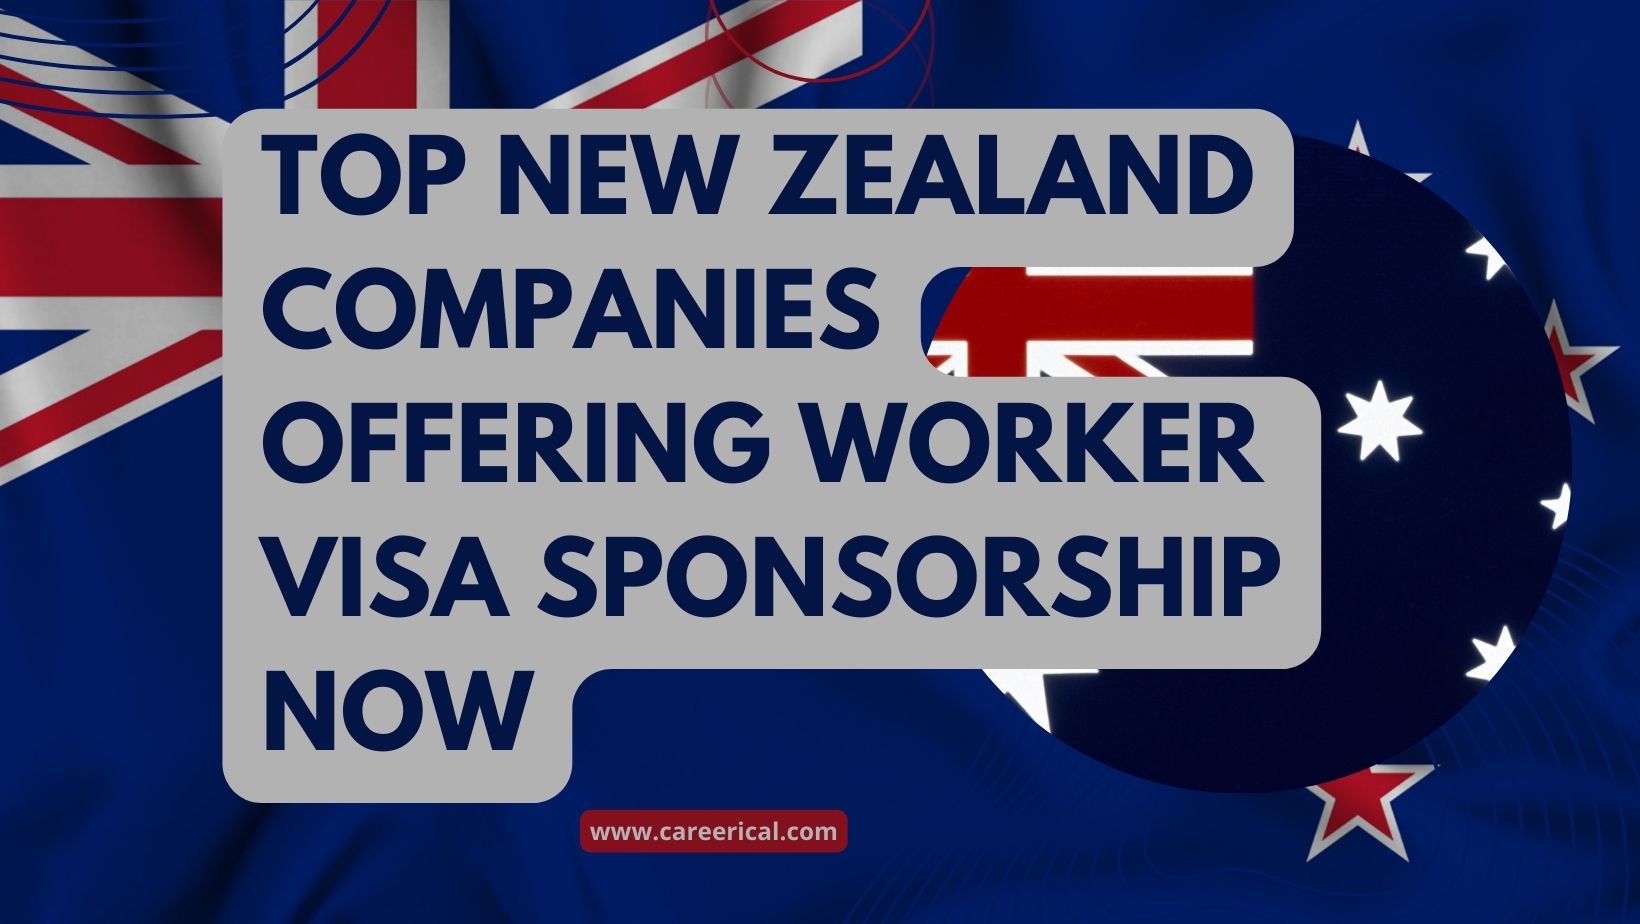 Top New Zealand Companies Offering Worker Visa Sponsorship Now